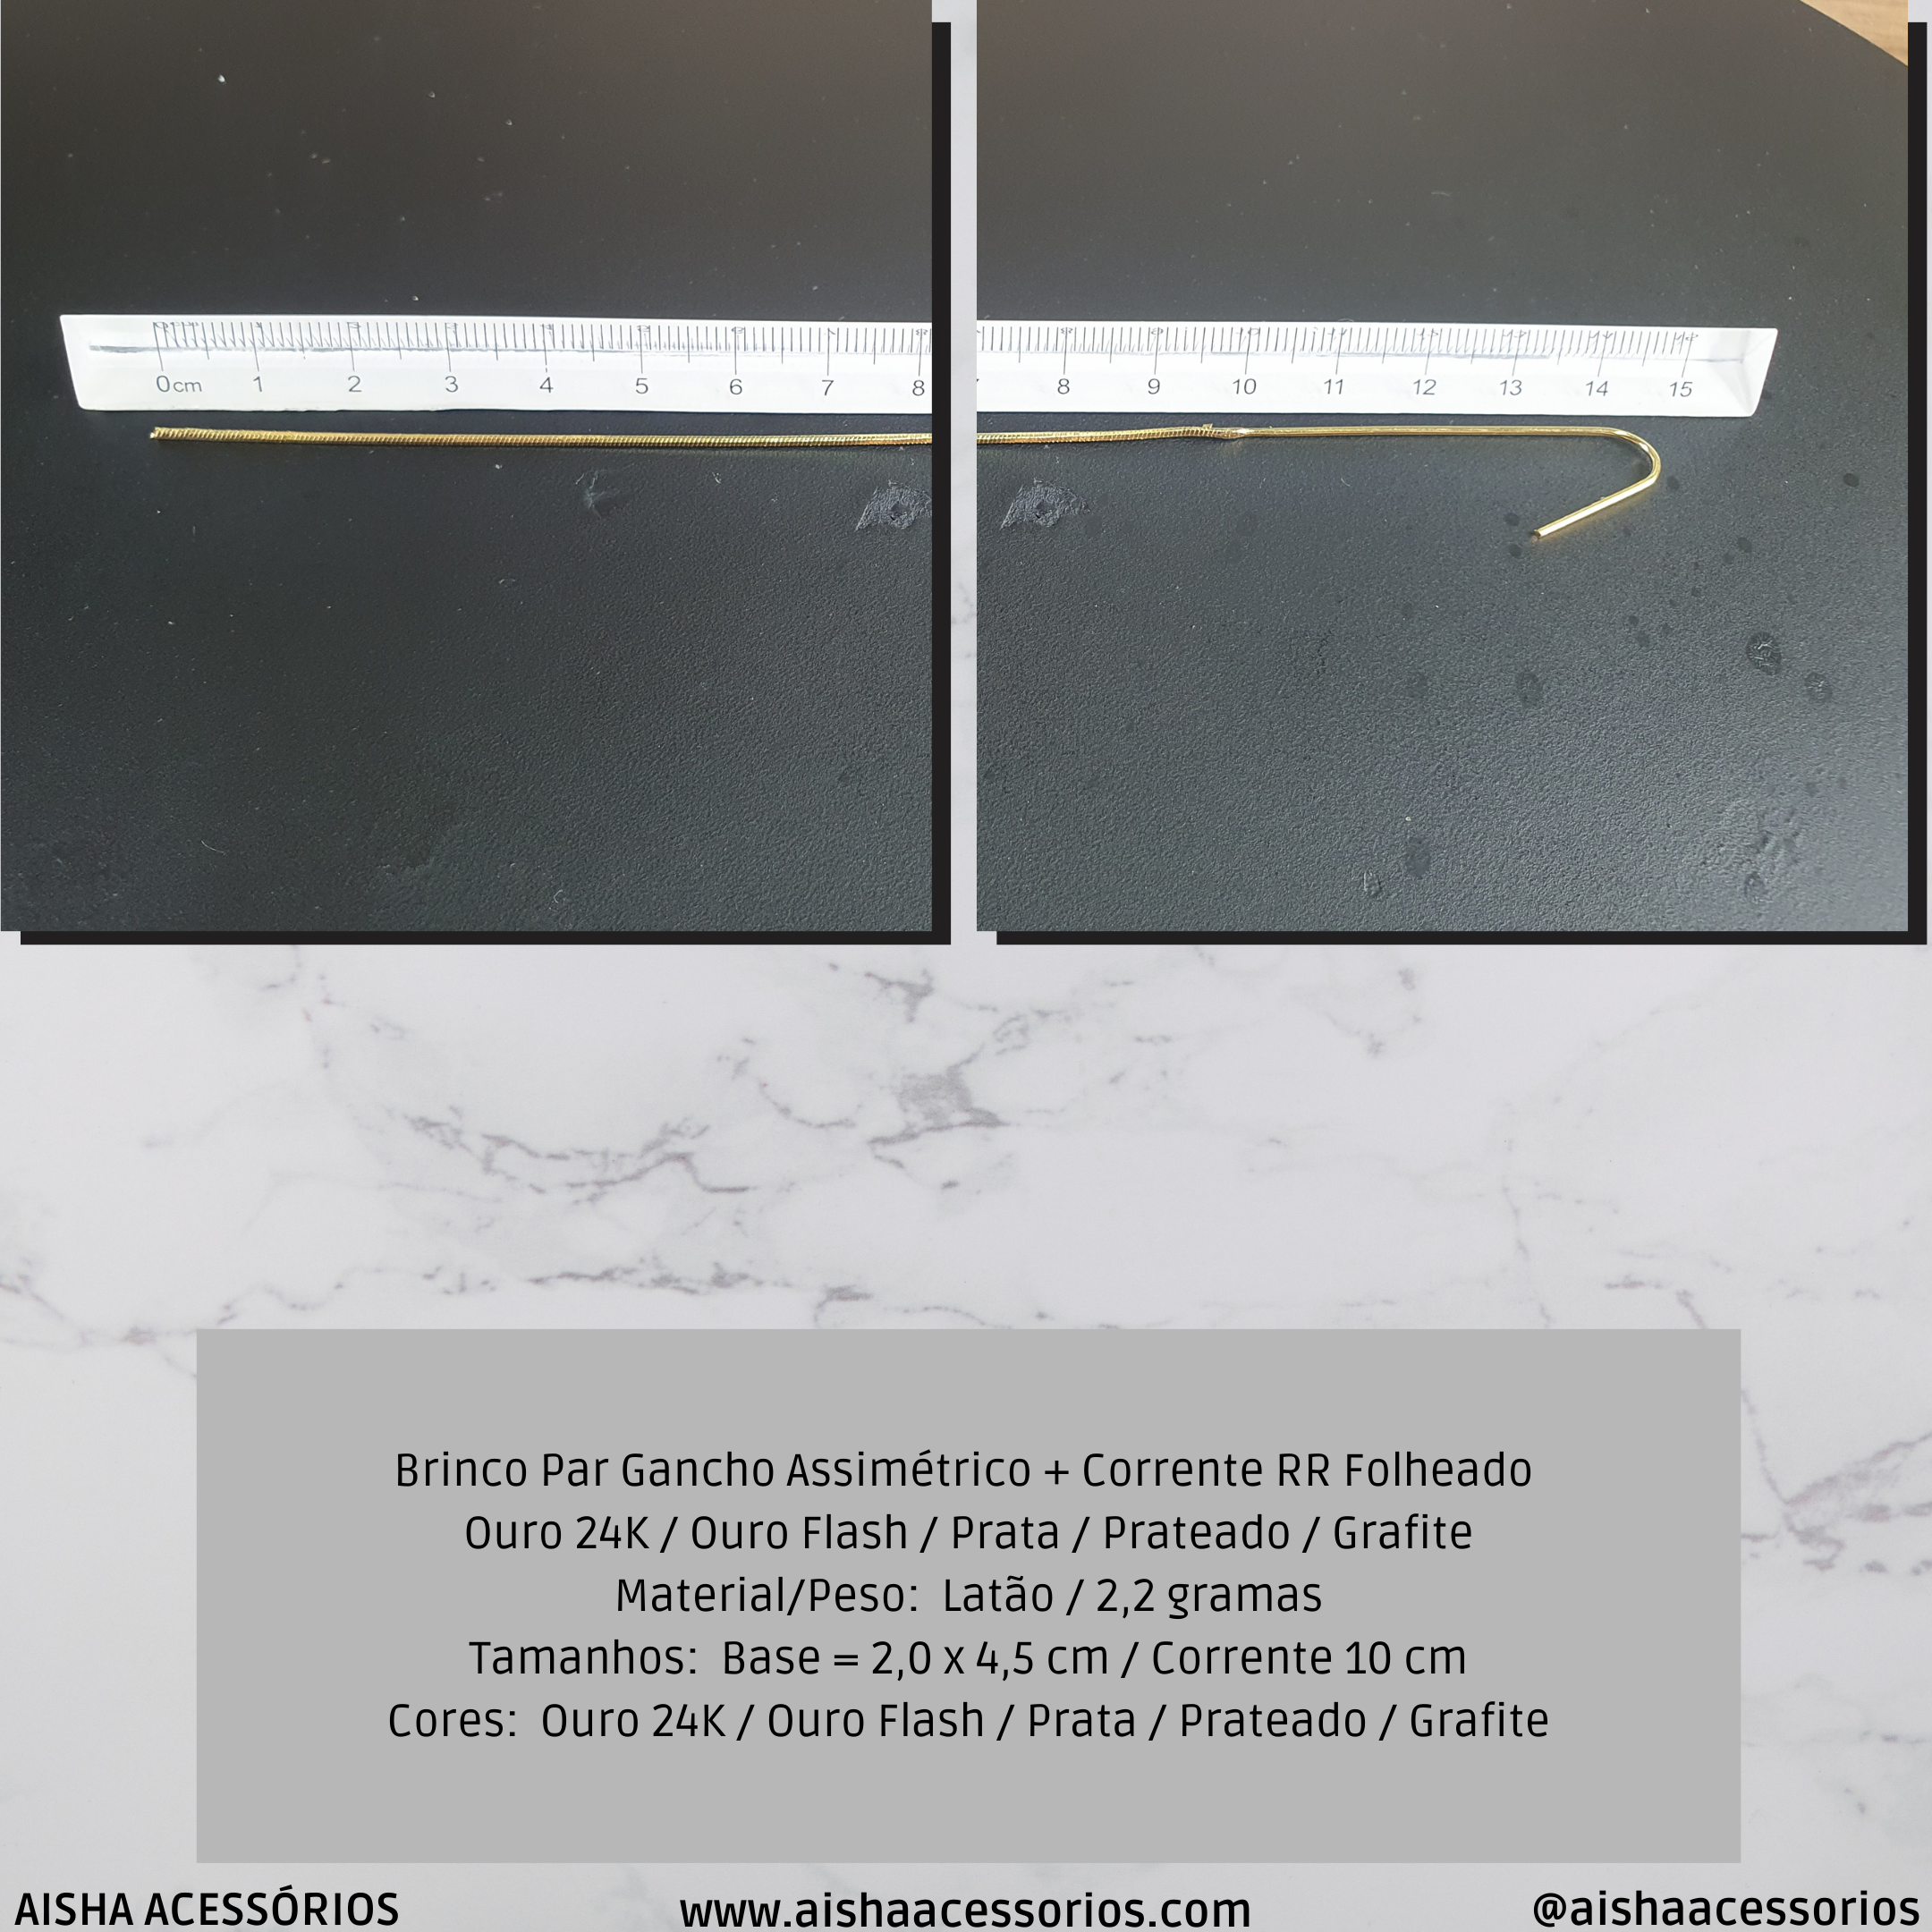 Brinco Par Gancho Assimétrico + Corrente RR Folheado Ouro 24K / Ouro Flash / Prata / Prateado / Grafite